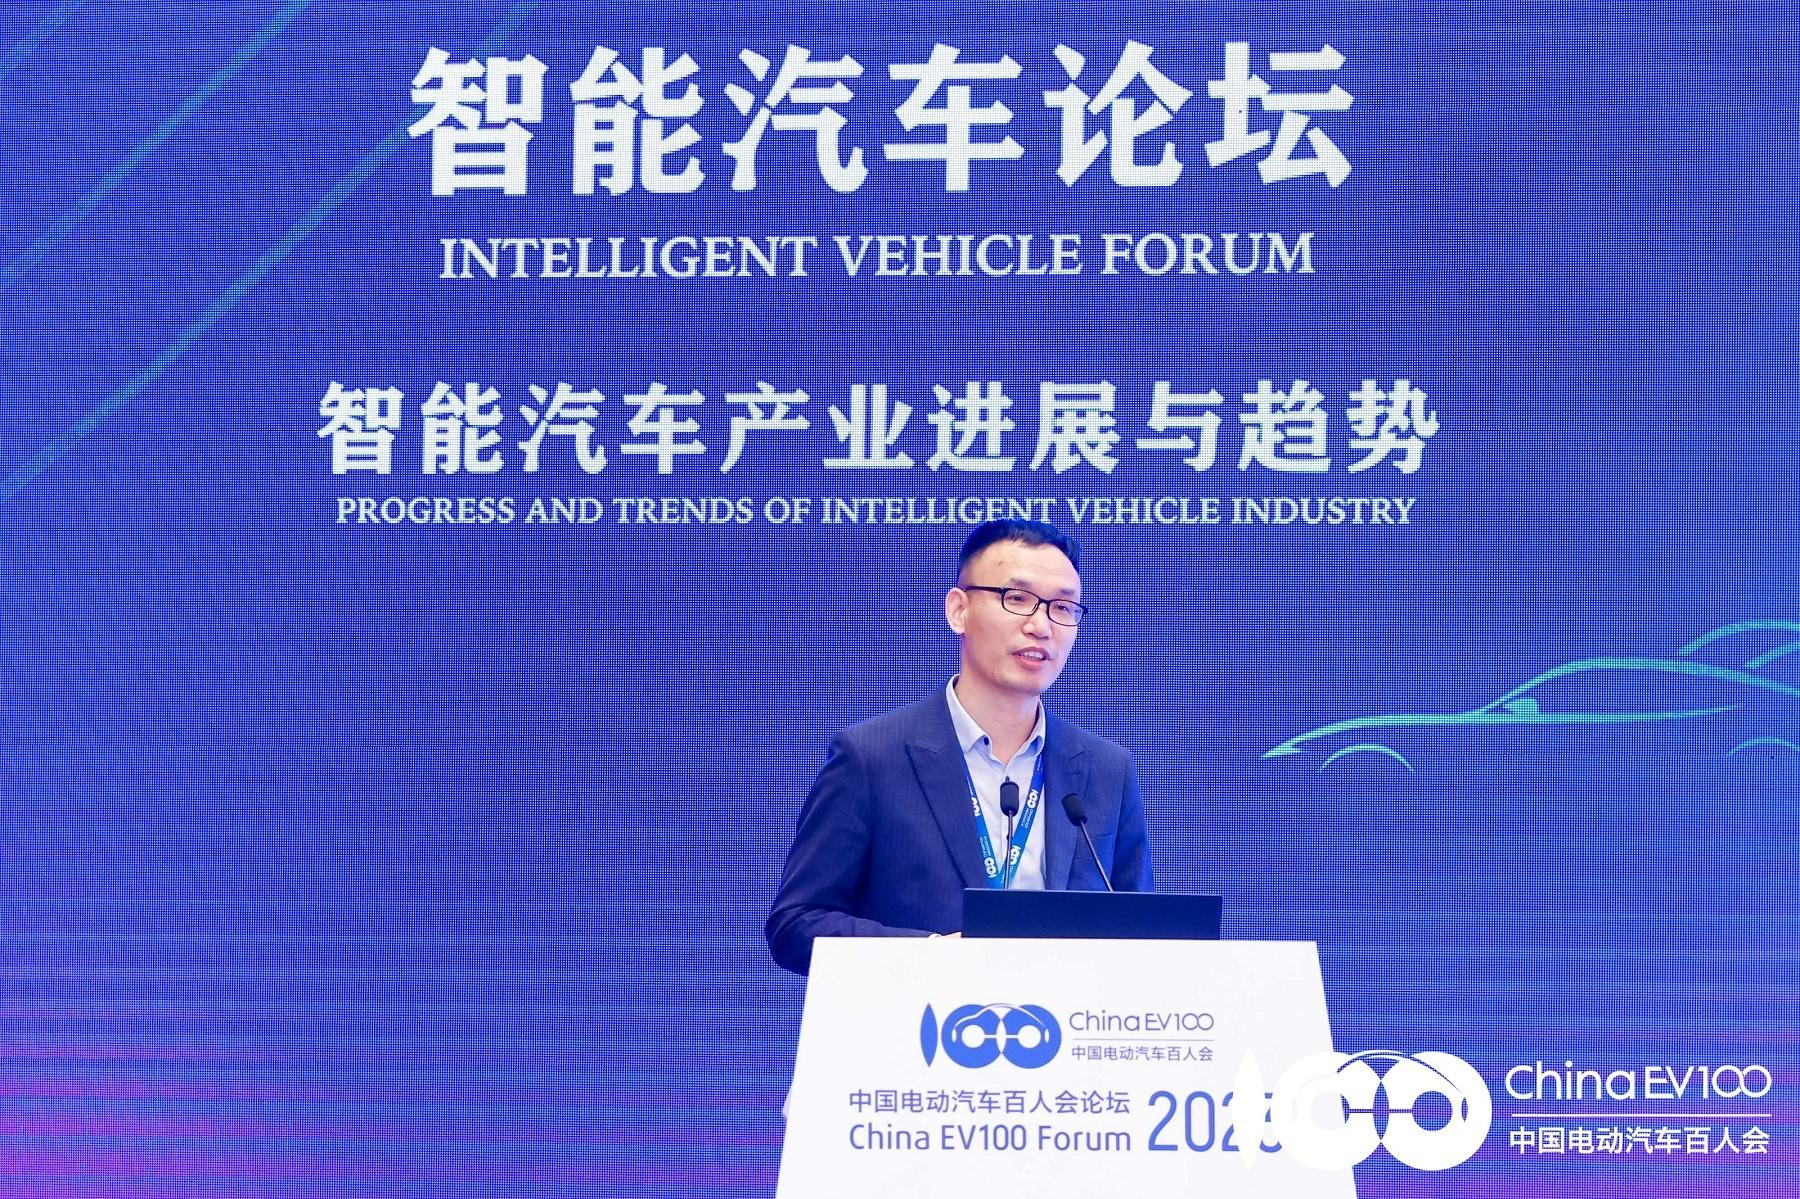 Pertemuan China Electric Vehicle 100 berhasil diselenggarakan, dan Huawei CLOUD mempromosikan pengembangan industri kendaraan otonom dengan teknologi AI